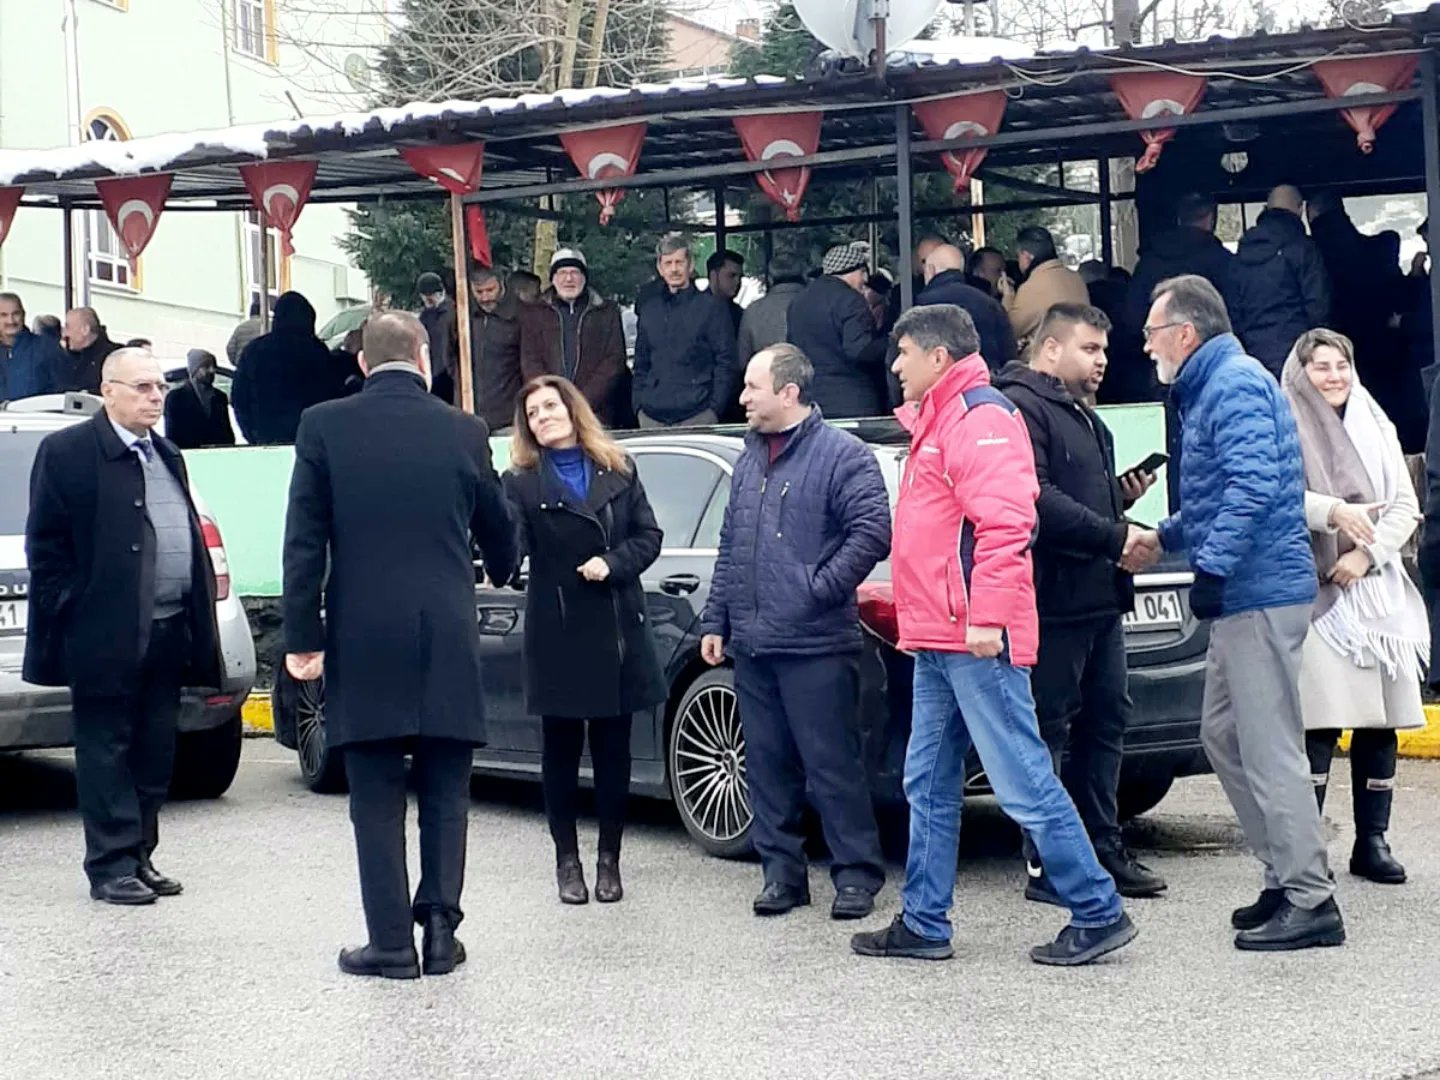  Mustafa Sarı'nın Kartepe Arslanbey Merkez Camii'sinde kılınan cenaze törenine katılarak taziye dileklerimizi ilettik.